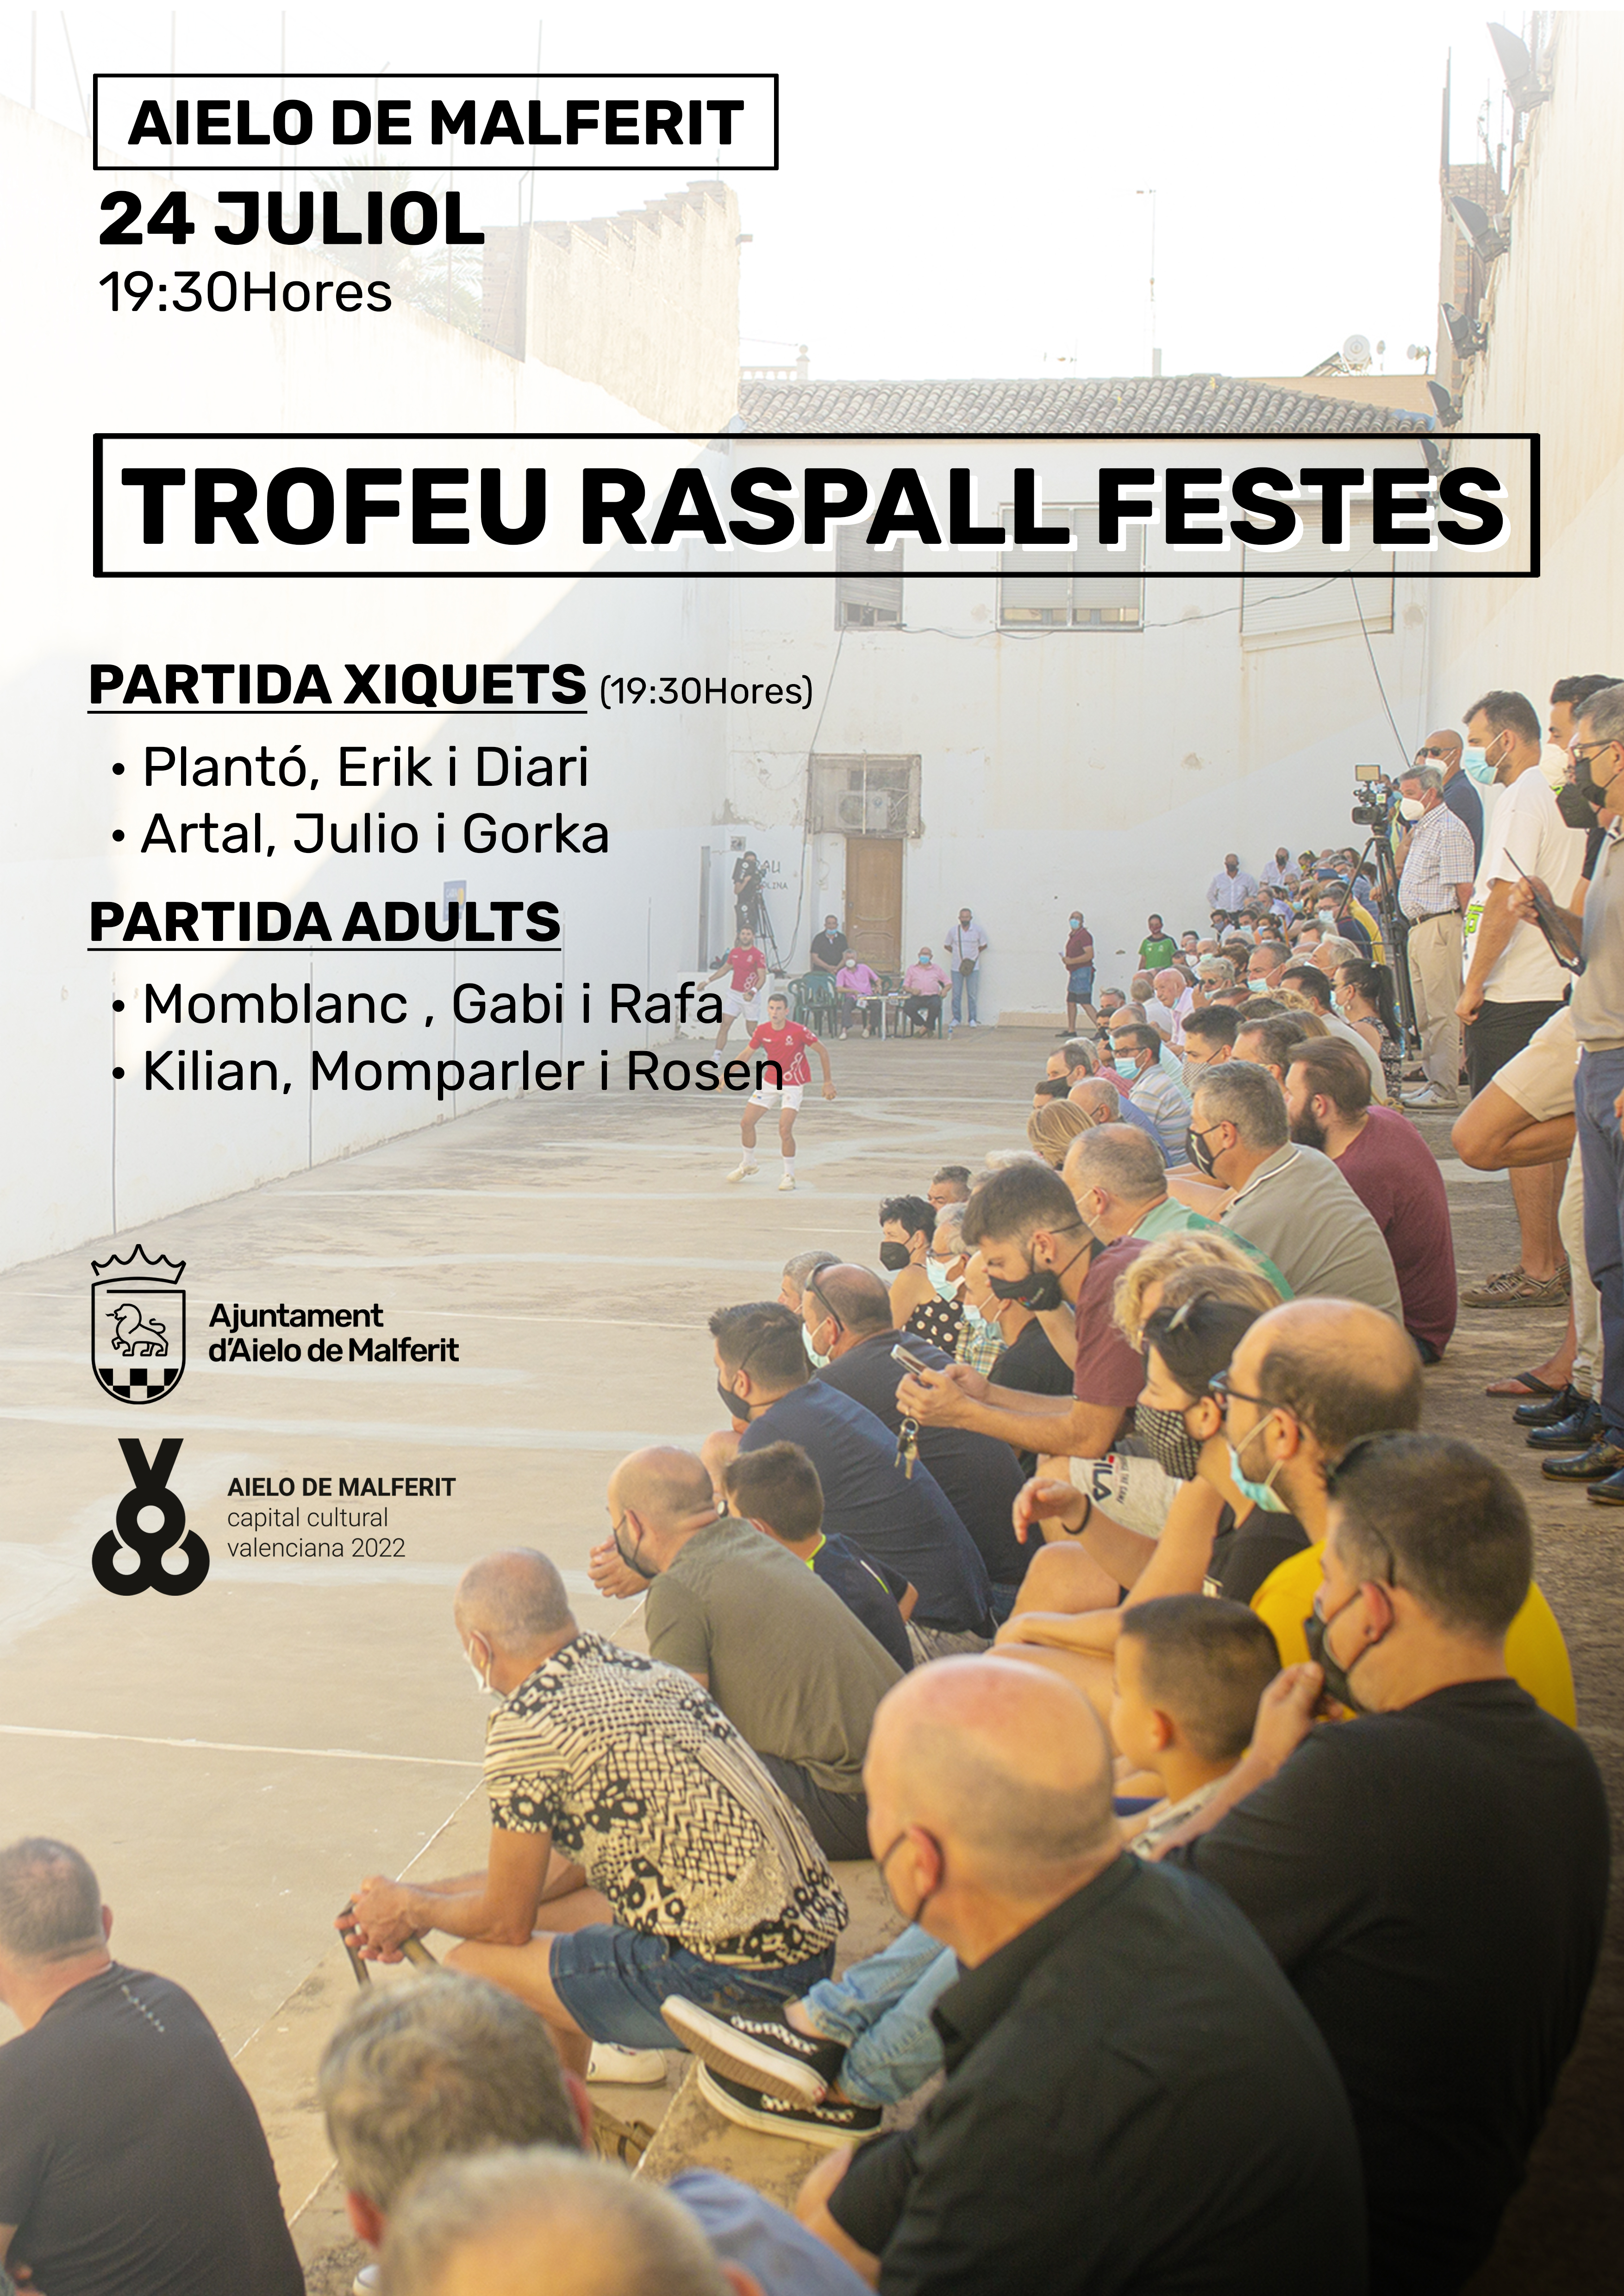 Raspall Trofeu Festes 2022